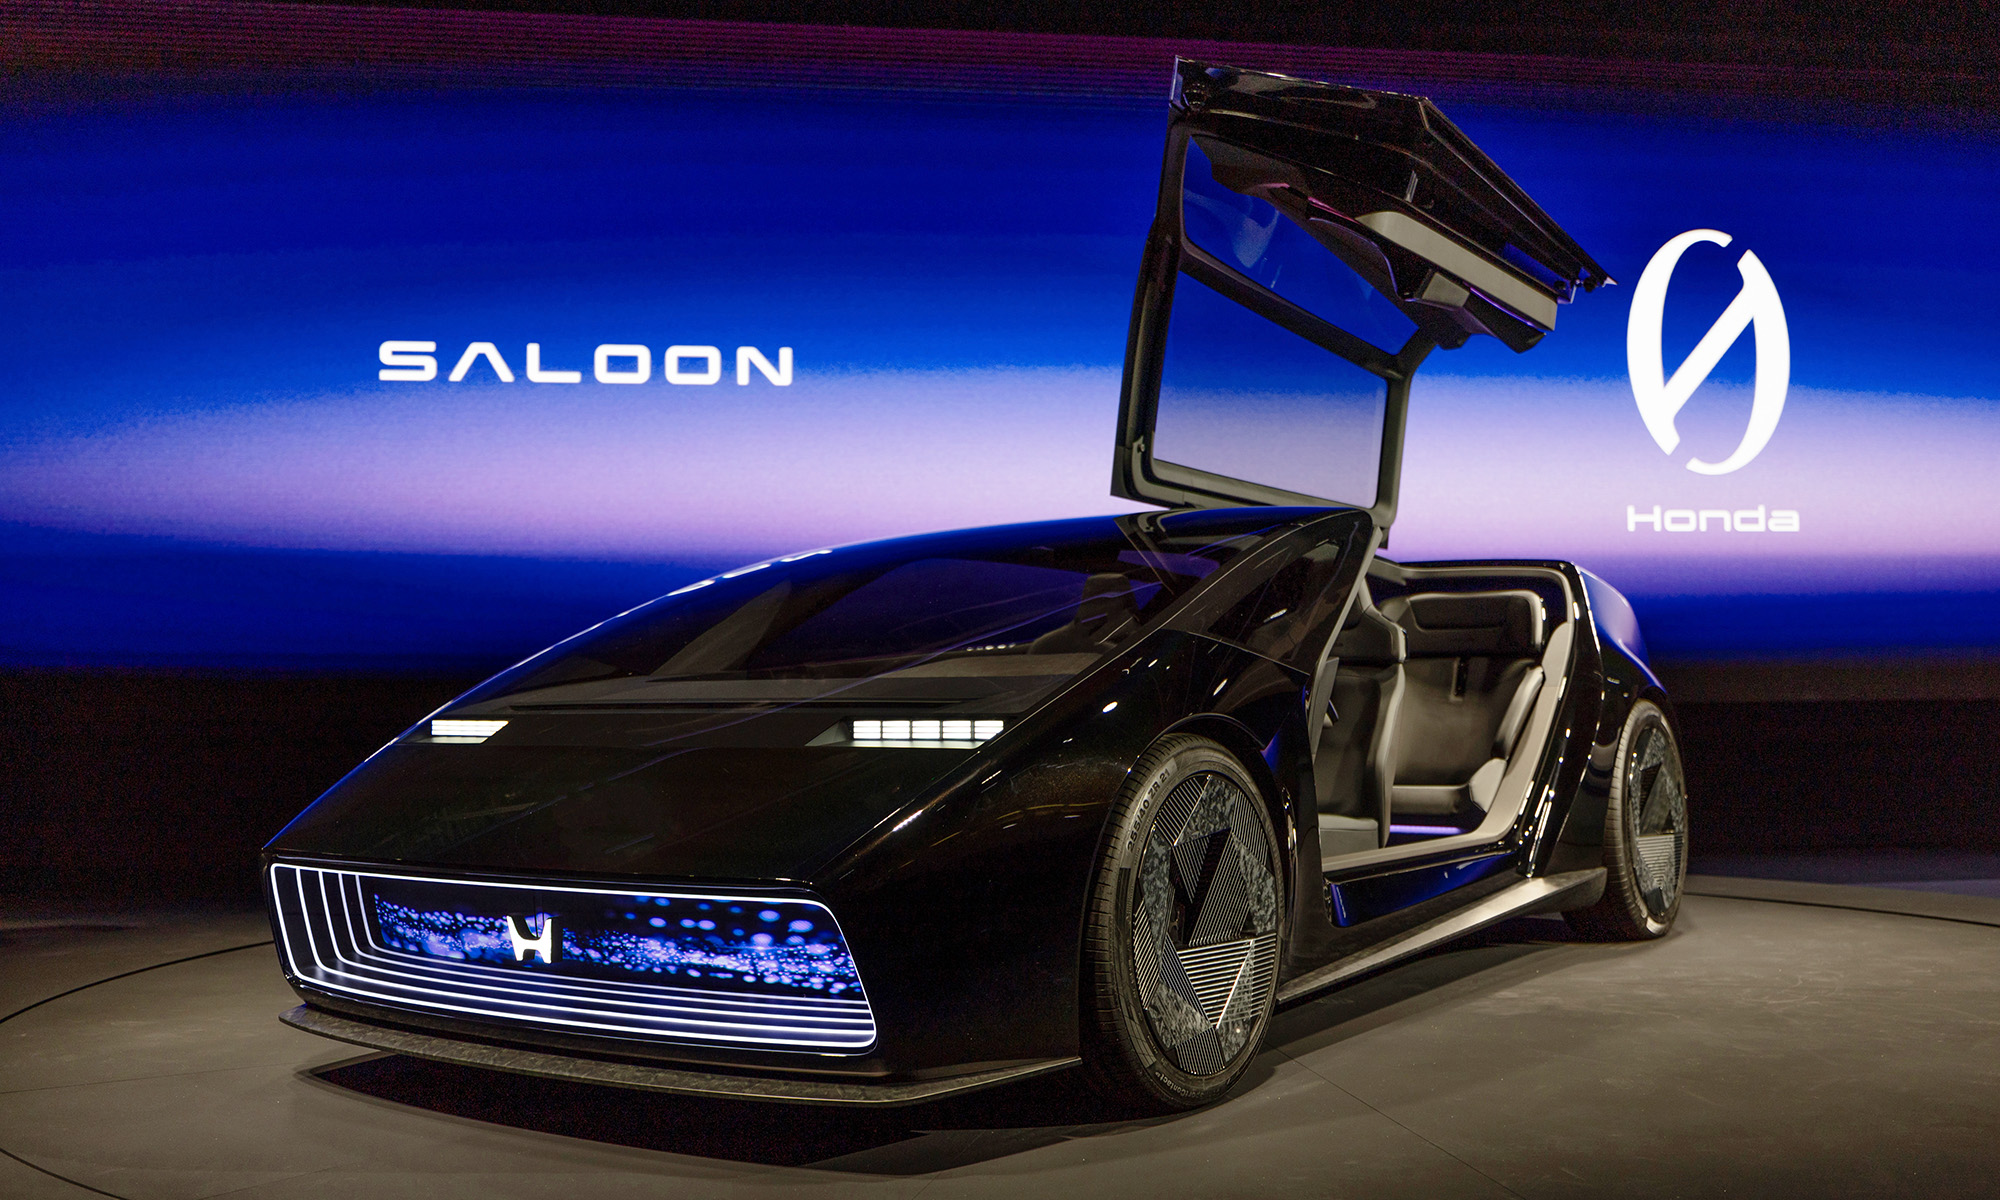 La futura berlina eléctrica de Honda se basará en el Saloon Concept presentado hace unos meses.